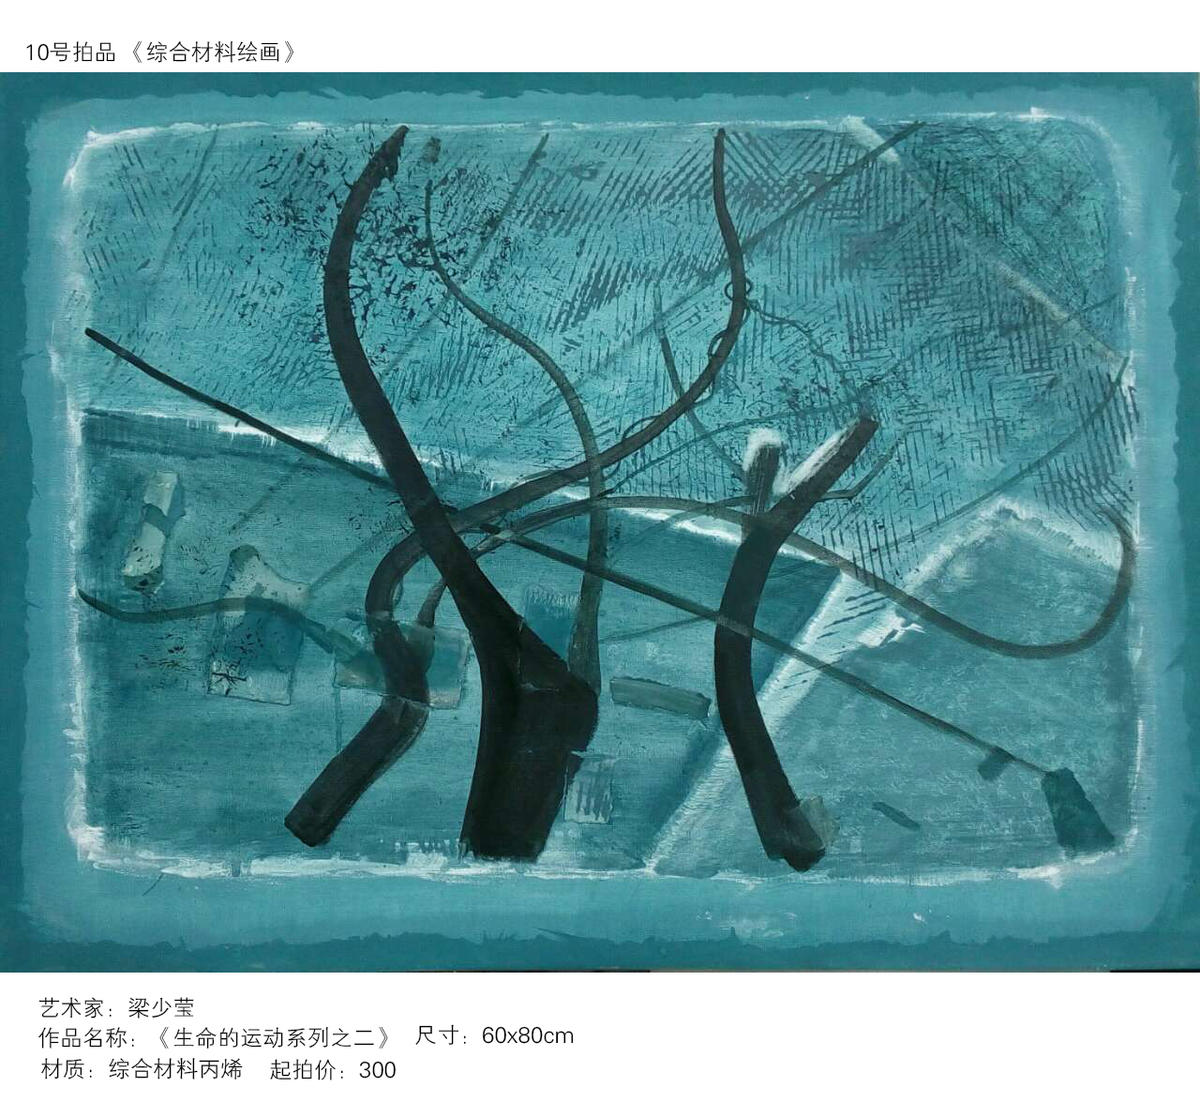 北京艺拍 第一期艺术精品作品展示